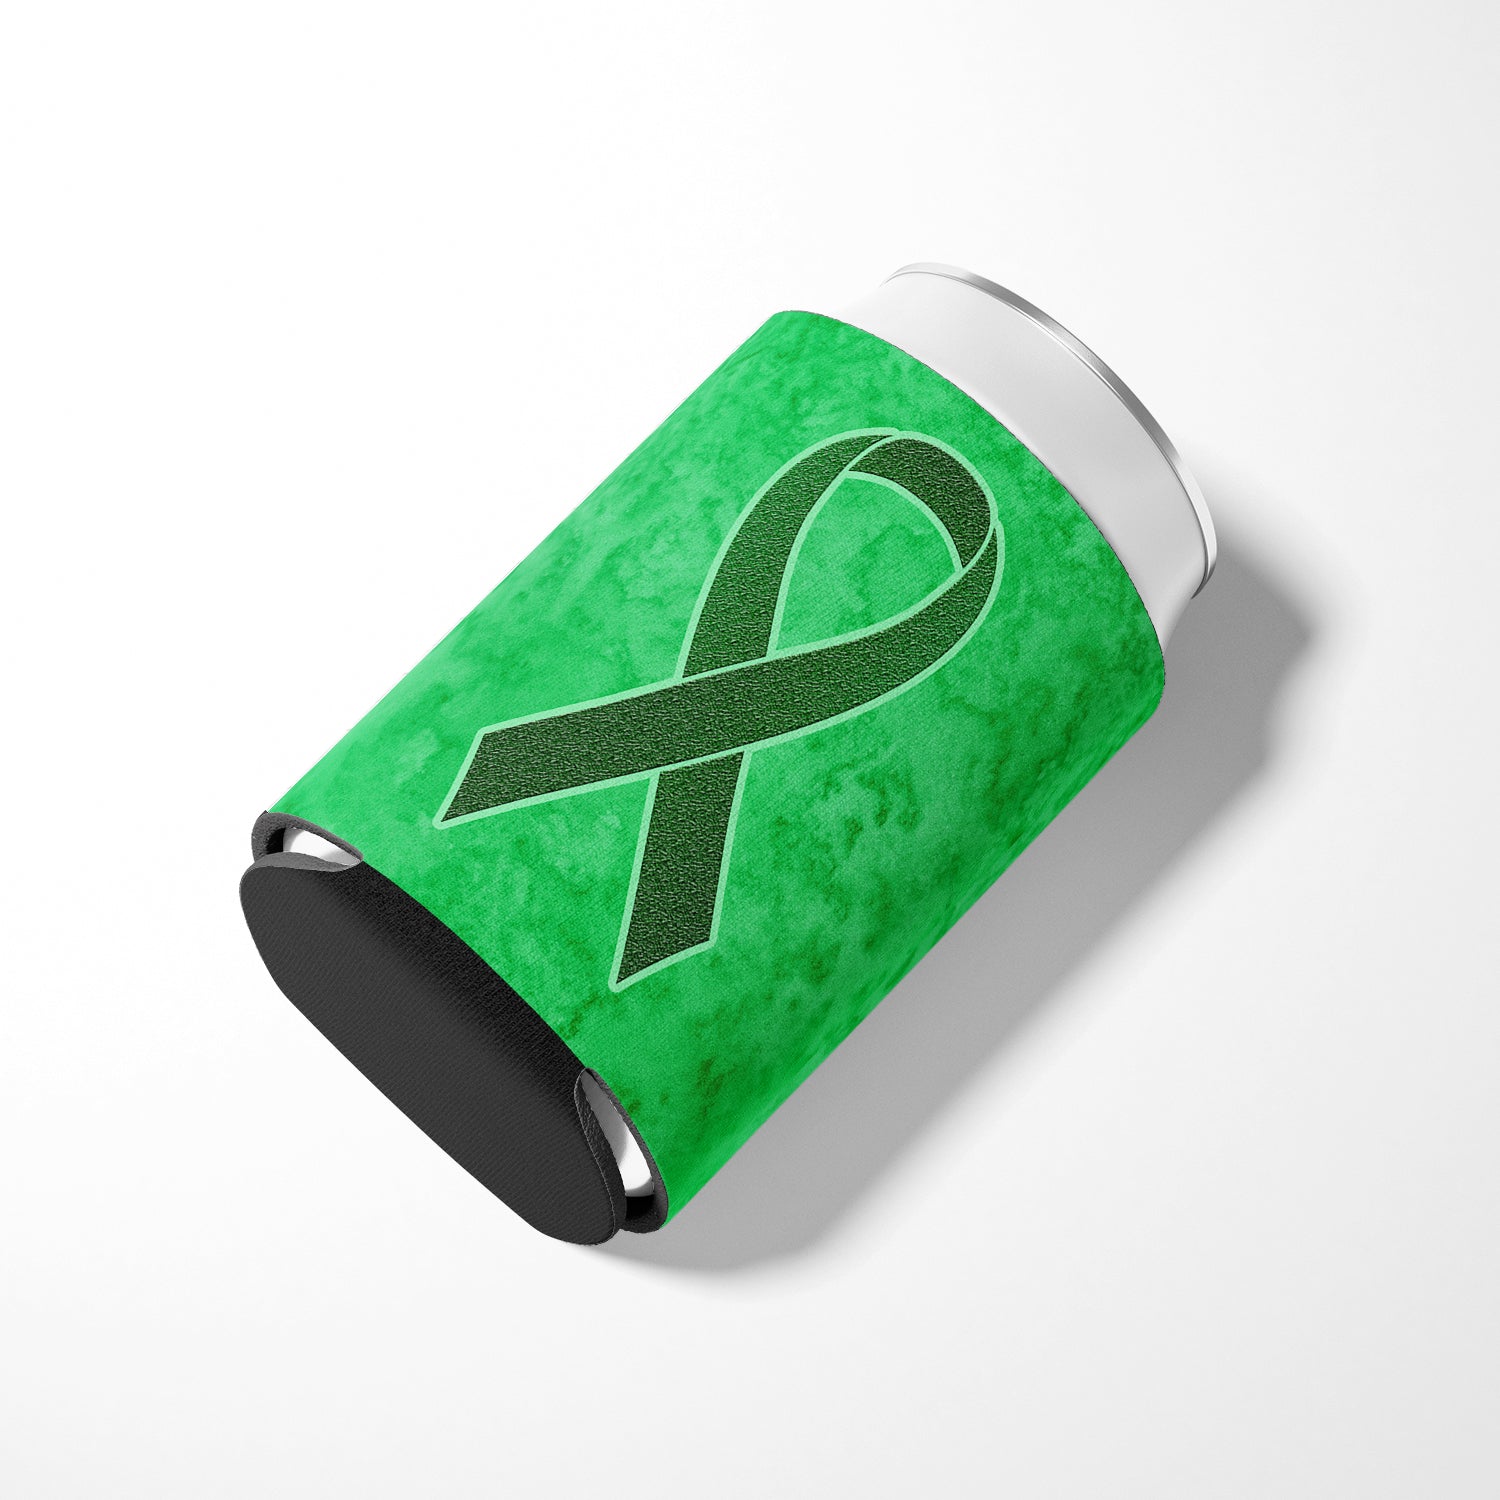 Ruban vert émeraude pour canette de sensibilisation au cancer du foie ou porte-bouteille AN1221CC